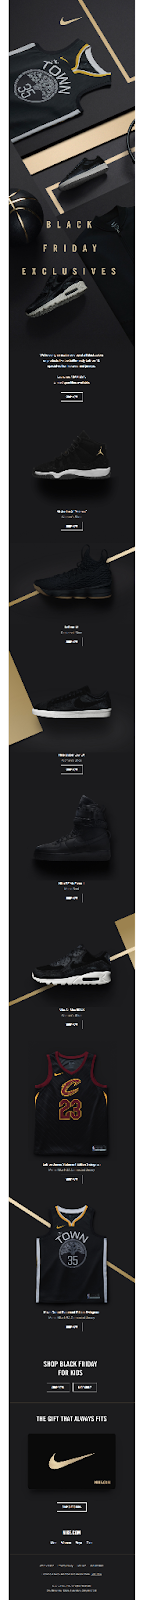 Nike e-mail naar klanten voor Black Friday